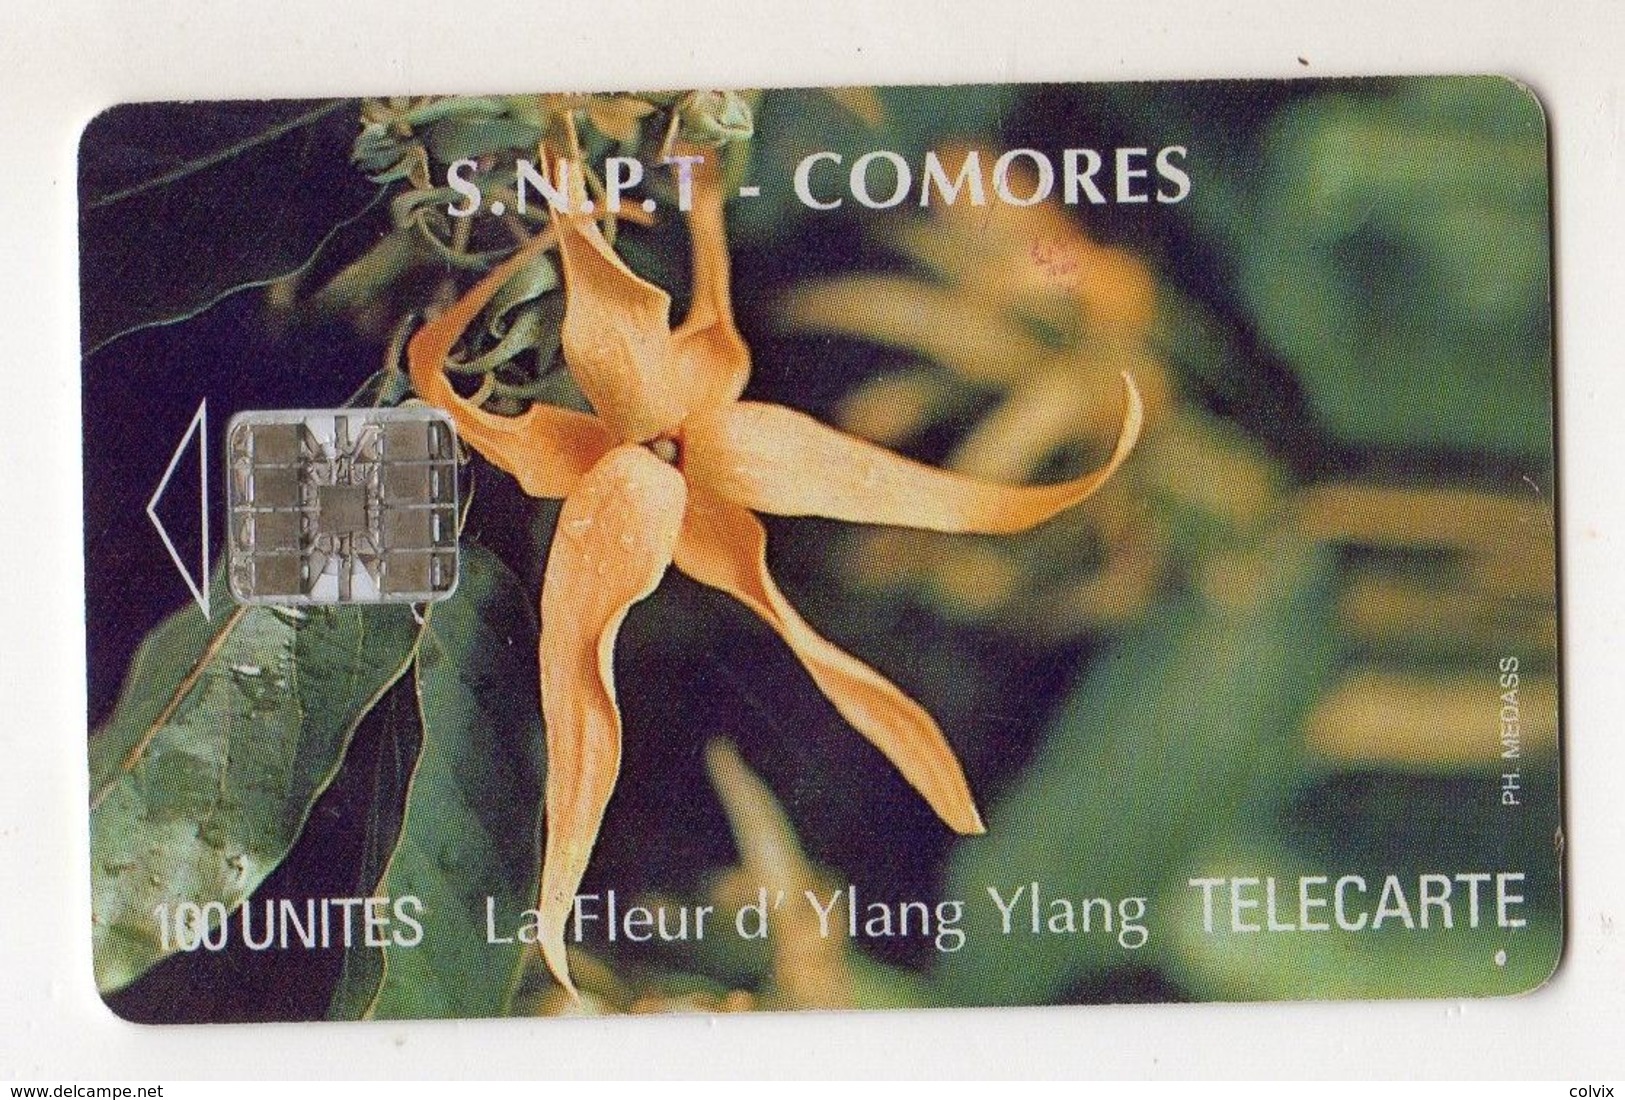 COMORES REF TELECARTE  S.N.P.T MV CARDS COM-11 YLANG YLANG FLEUR 100 U - Comoros